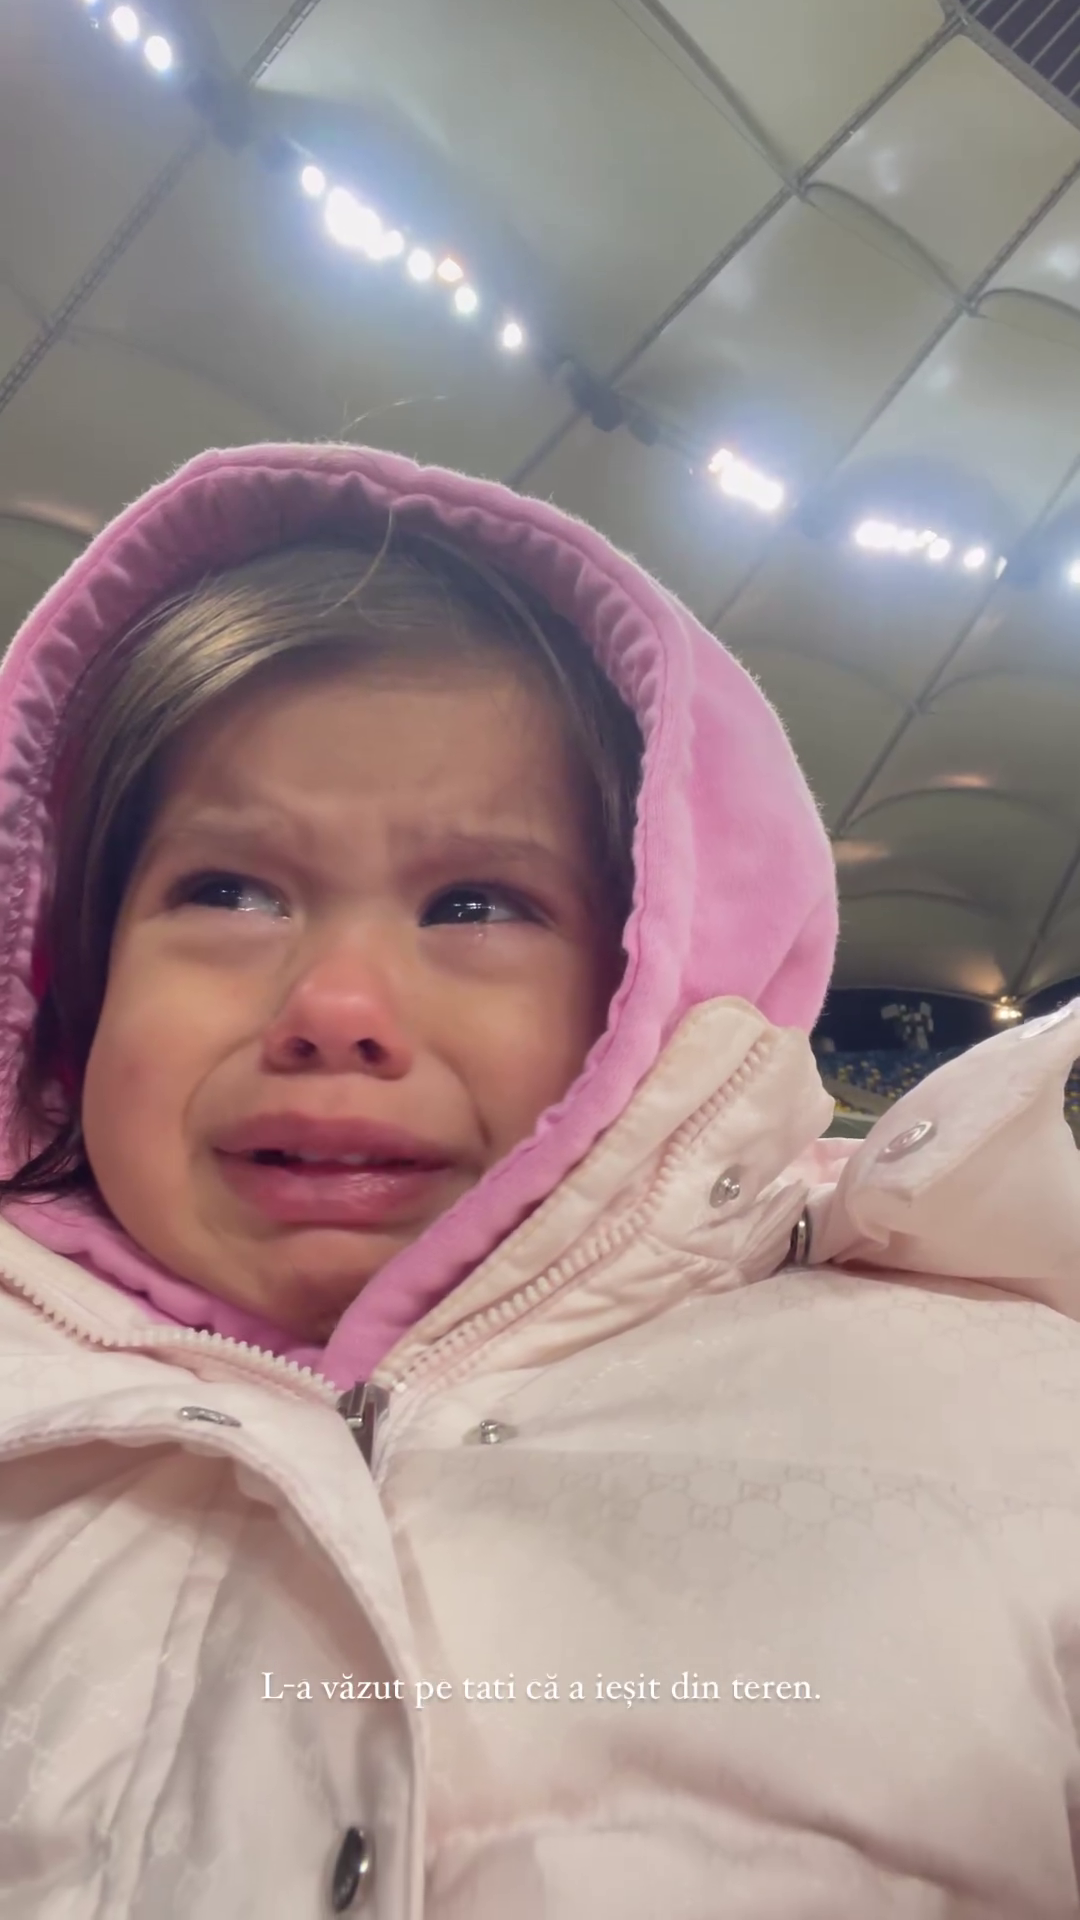 Moment emoționant! Fetița lui Florinel Coman a început să plângă când și-a văzut tatăl ieșind din teren pe Arena Națională! Ioana a filmat tot_6